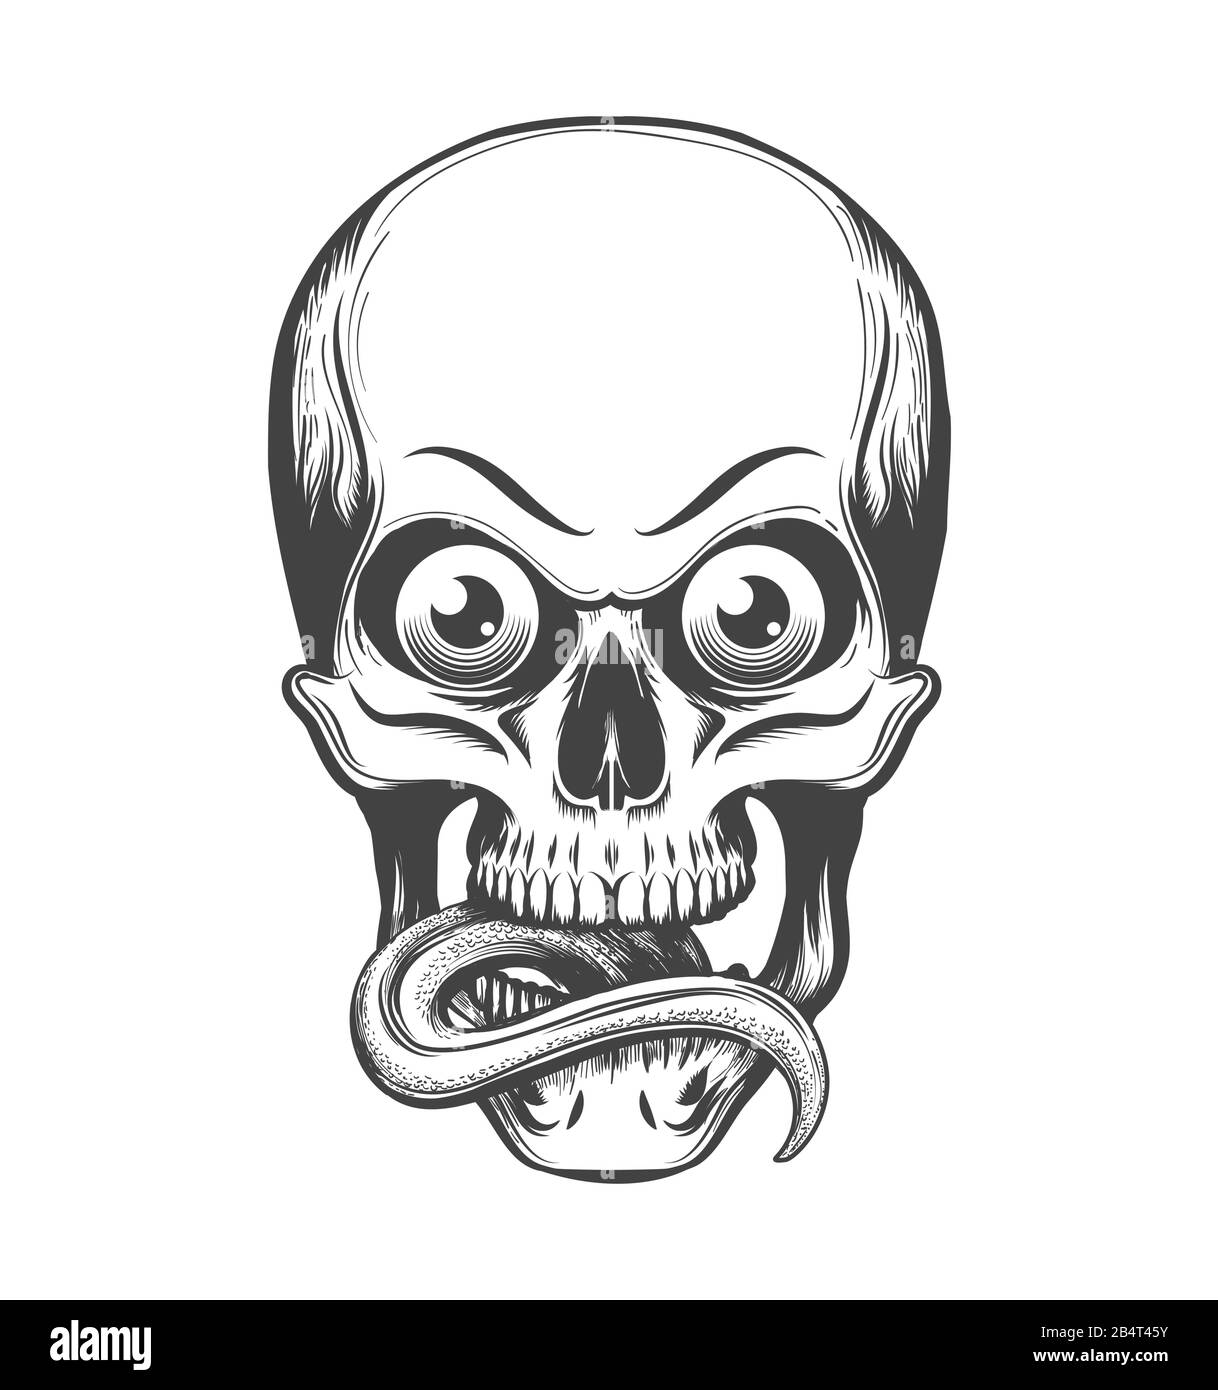 Menschlicher Schädel mit Augen und Zunge, die im Tattoo-Stil herausgezogen sind. Vektorgrafiken. Stock Vektor